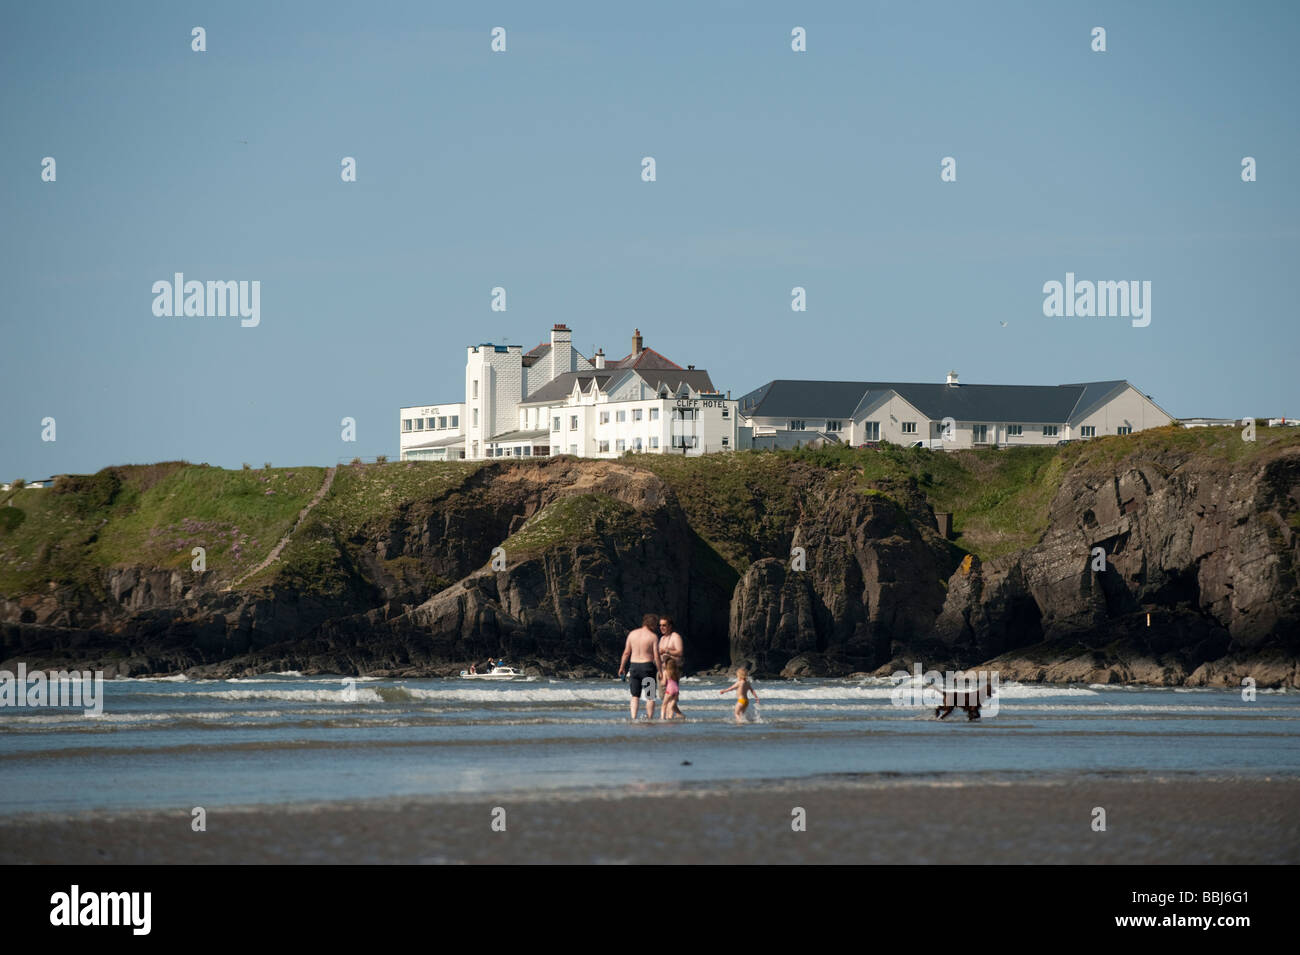 Le Cliff Hotel Gwbert West Wales vu de la plage de sables bitumineux Poppit UK Pembrokeshire Banque D'Images